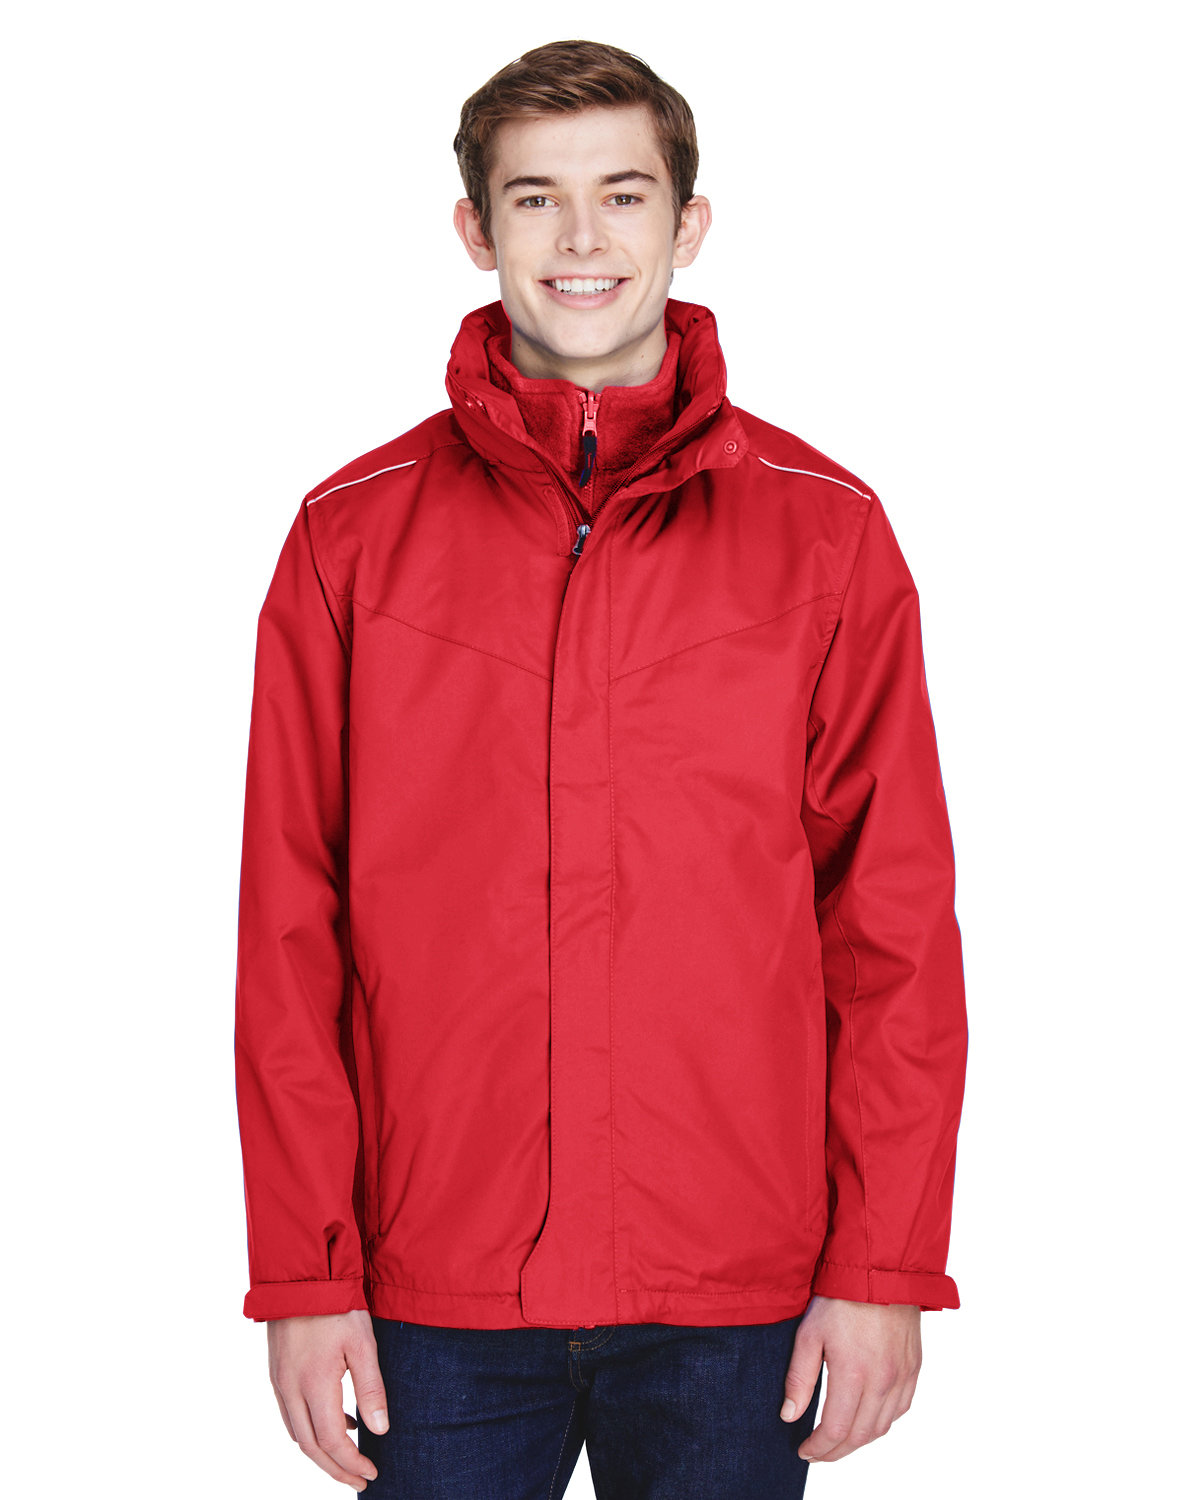 Core365 Men's Region 3-in-1 Jacket with Fleece Liner CLASSIC RED 